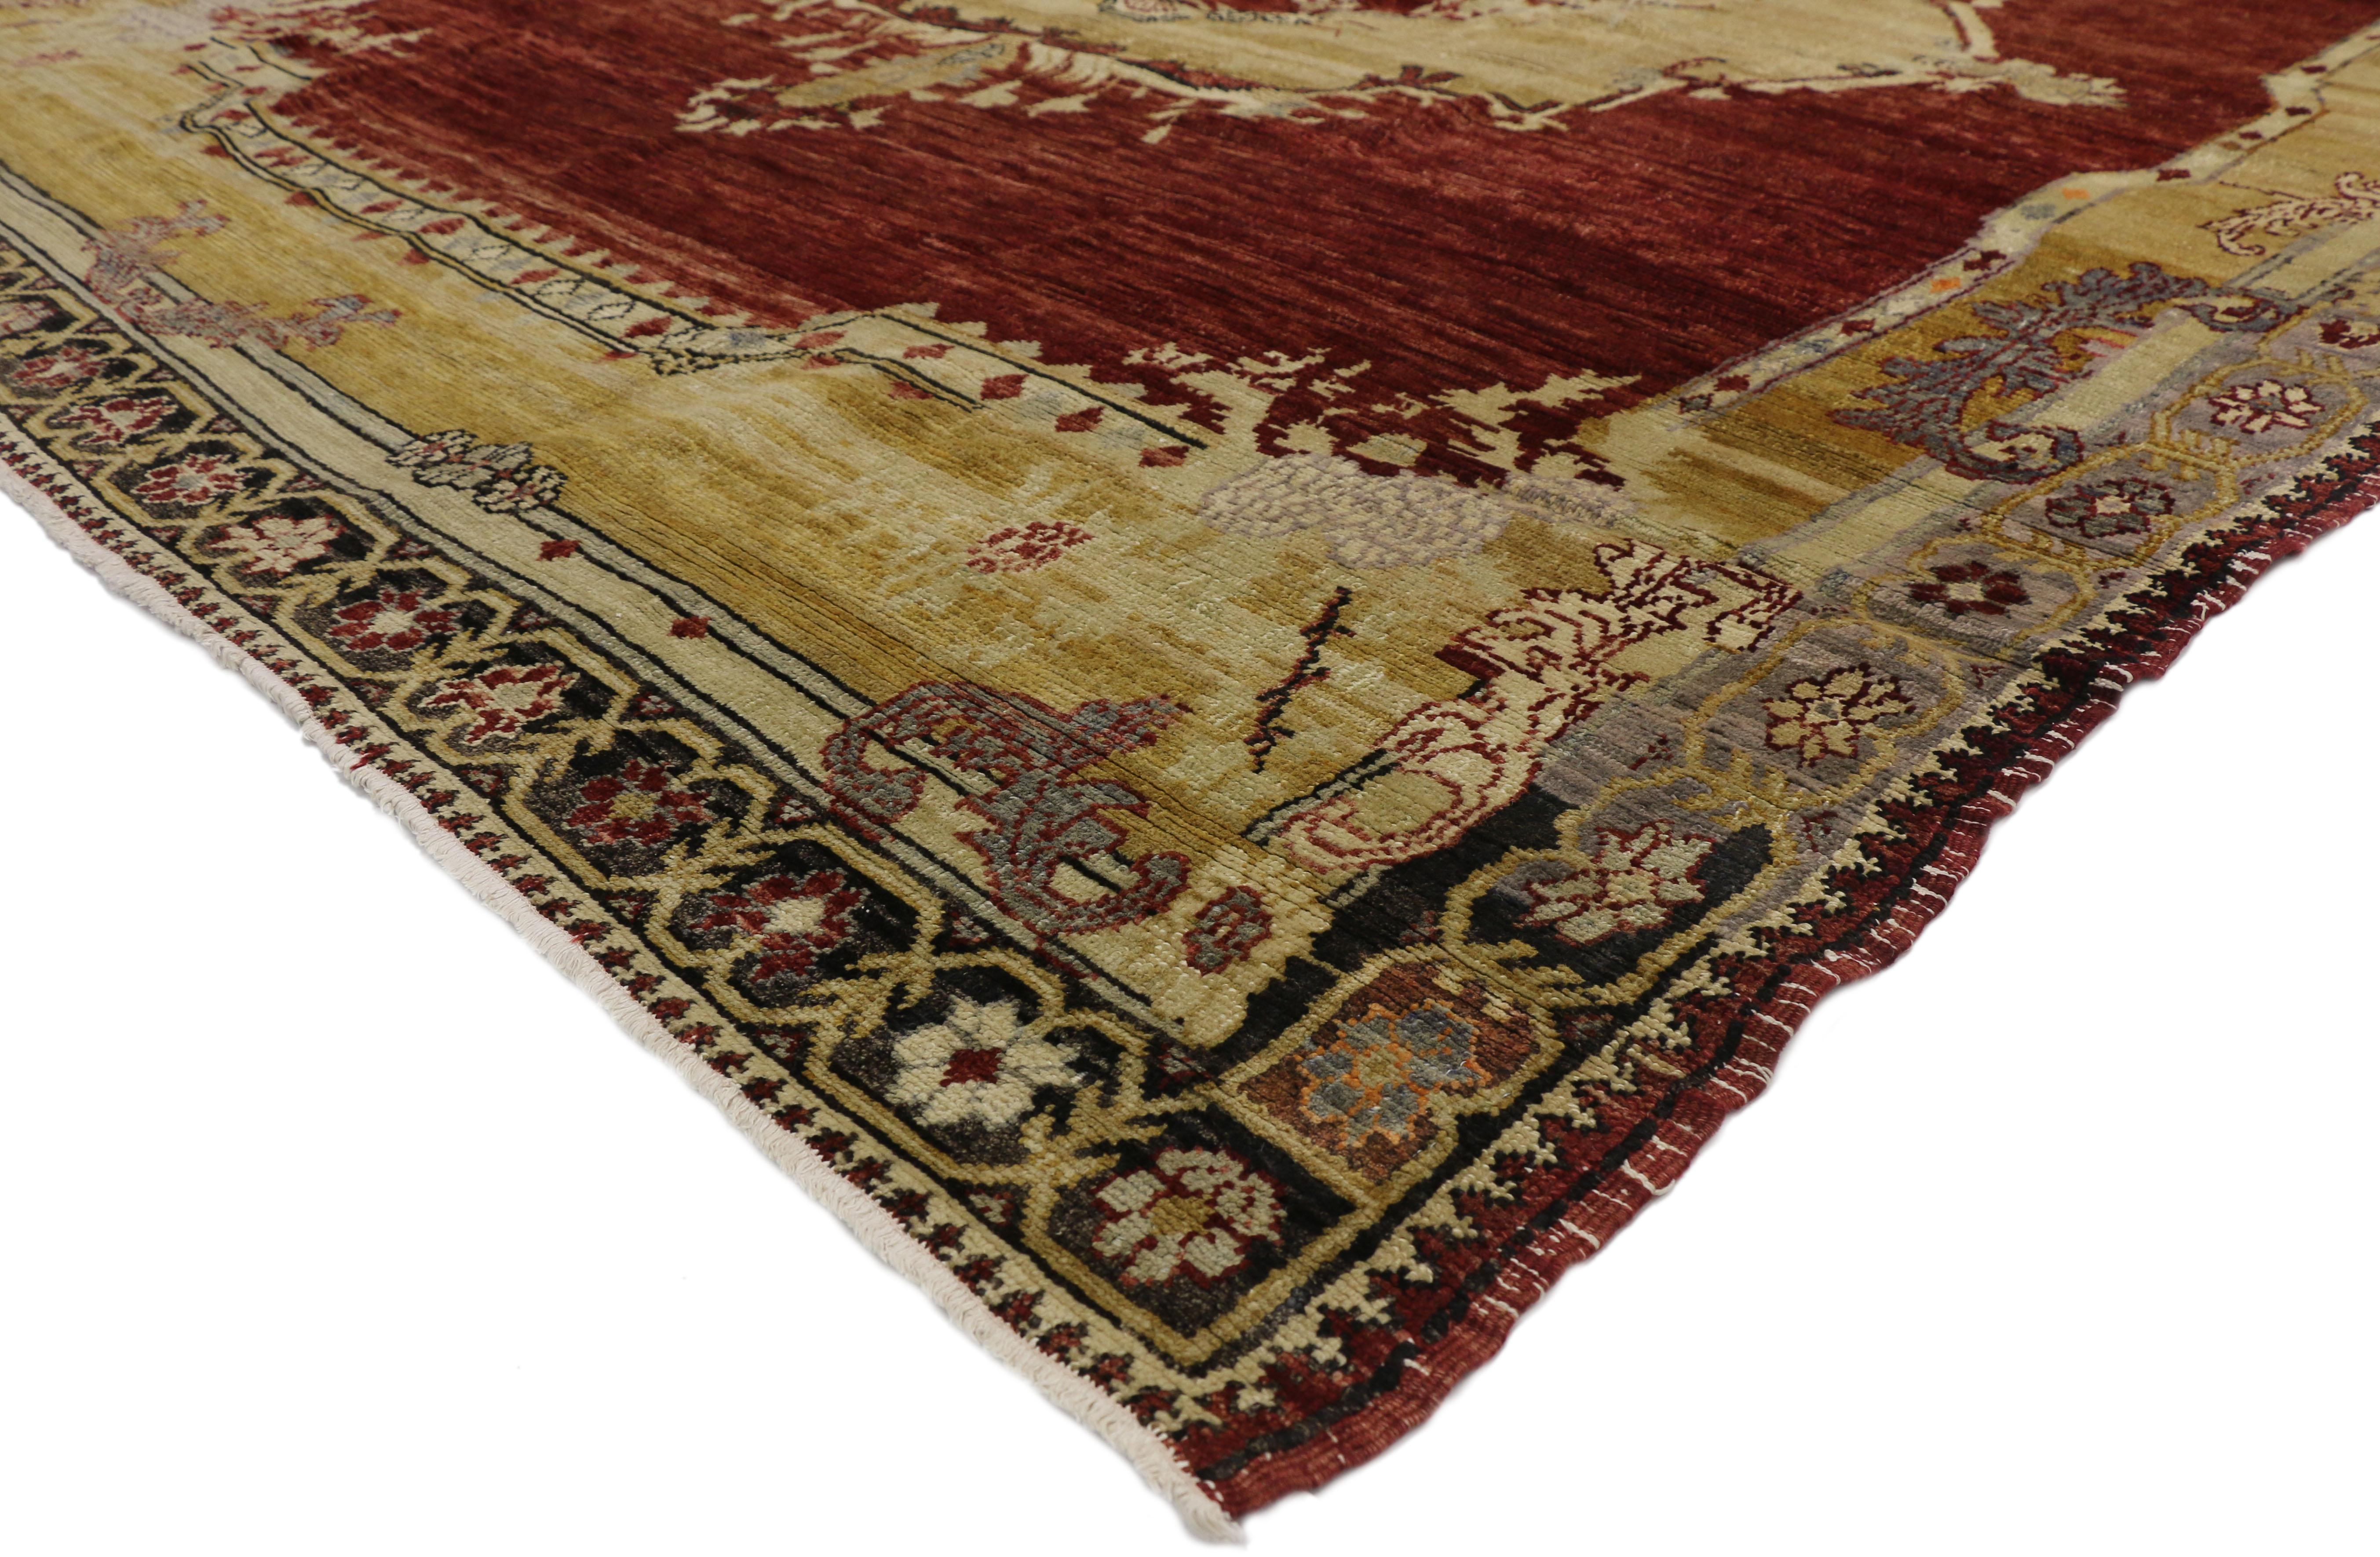 50650 Vieux tapis turc Sivas de style néo-gothique et byzantin. Cette laine nouée à la main présente un grand médaillon central flottant dans une mer robuste d'abrash. Chaque écoinçon représente joliment des grenades et des vrilles feuillues se